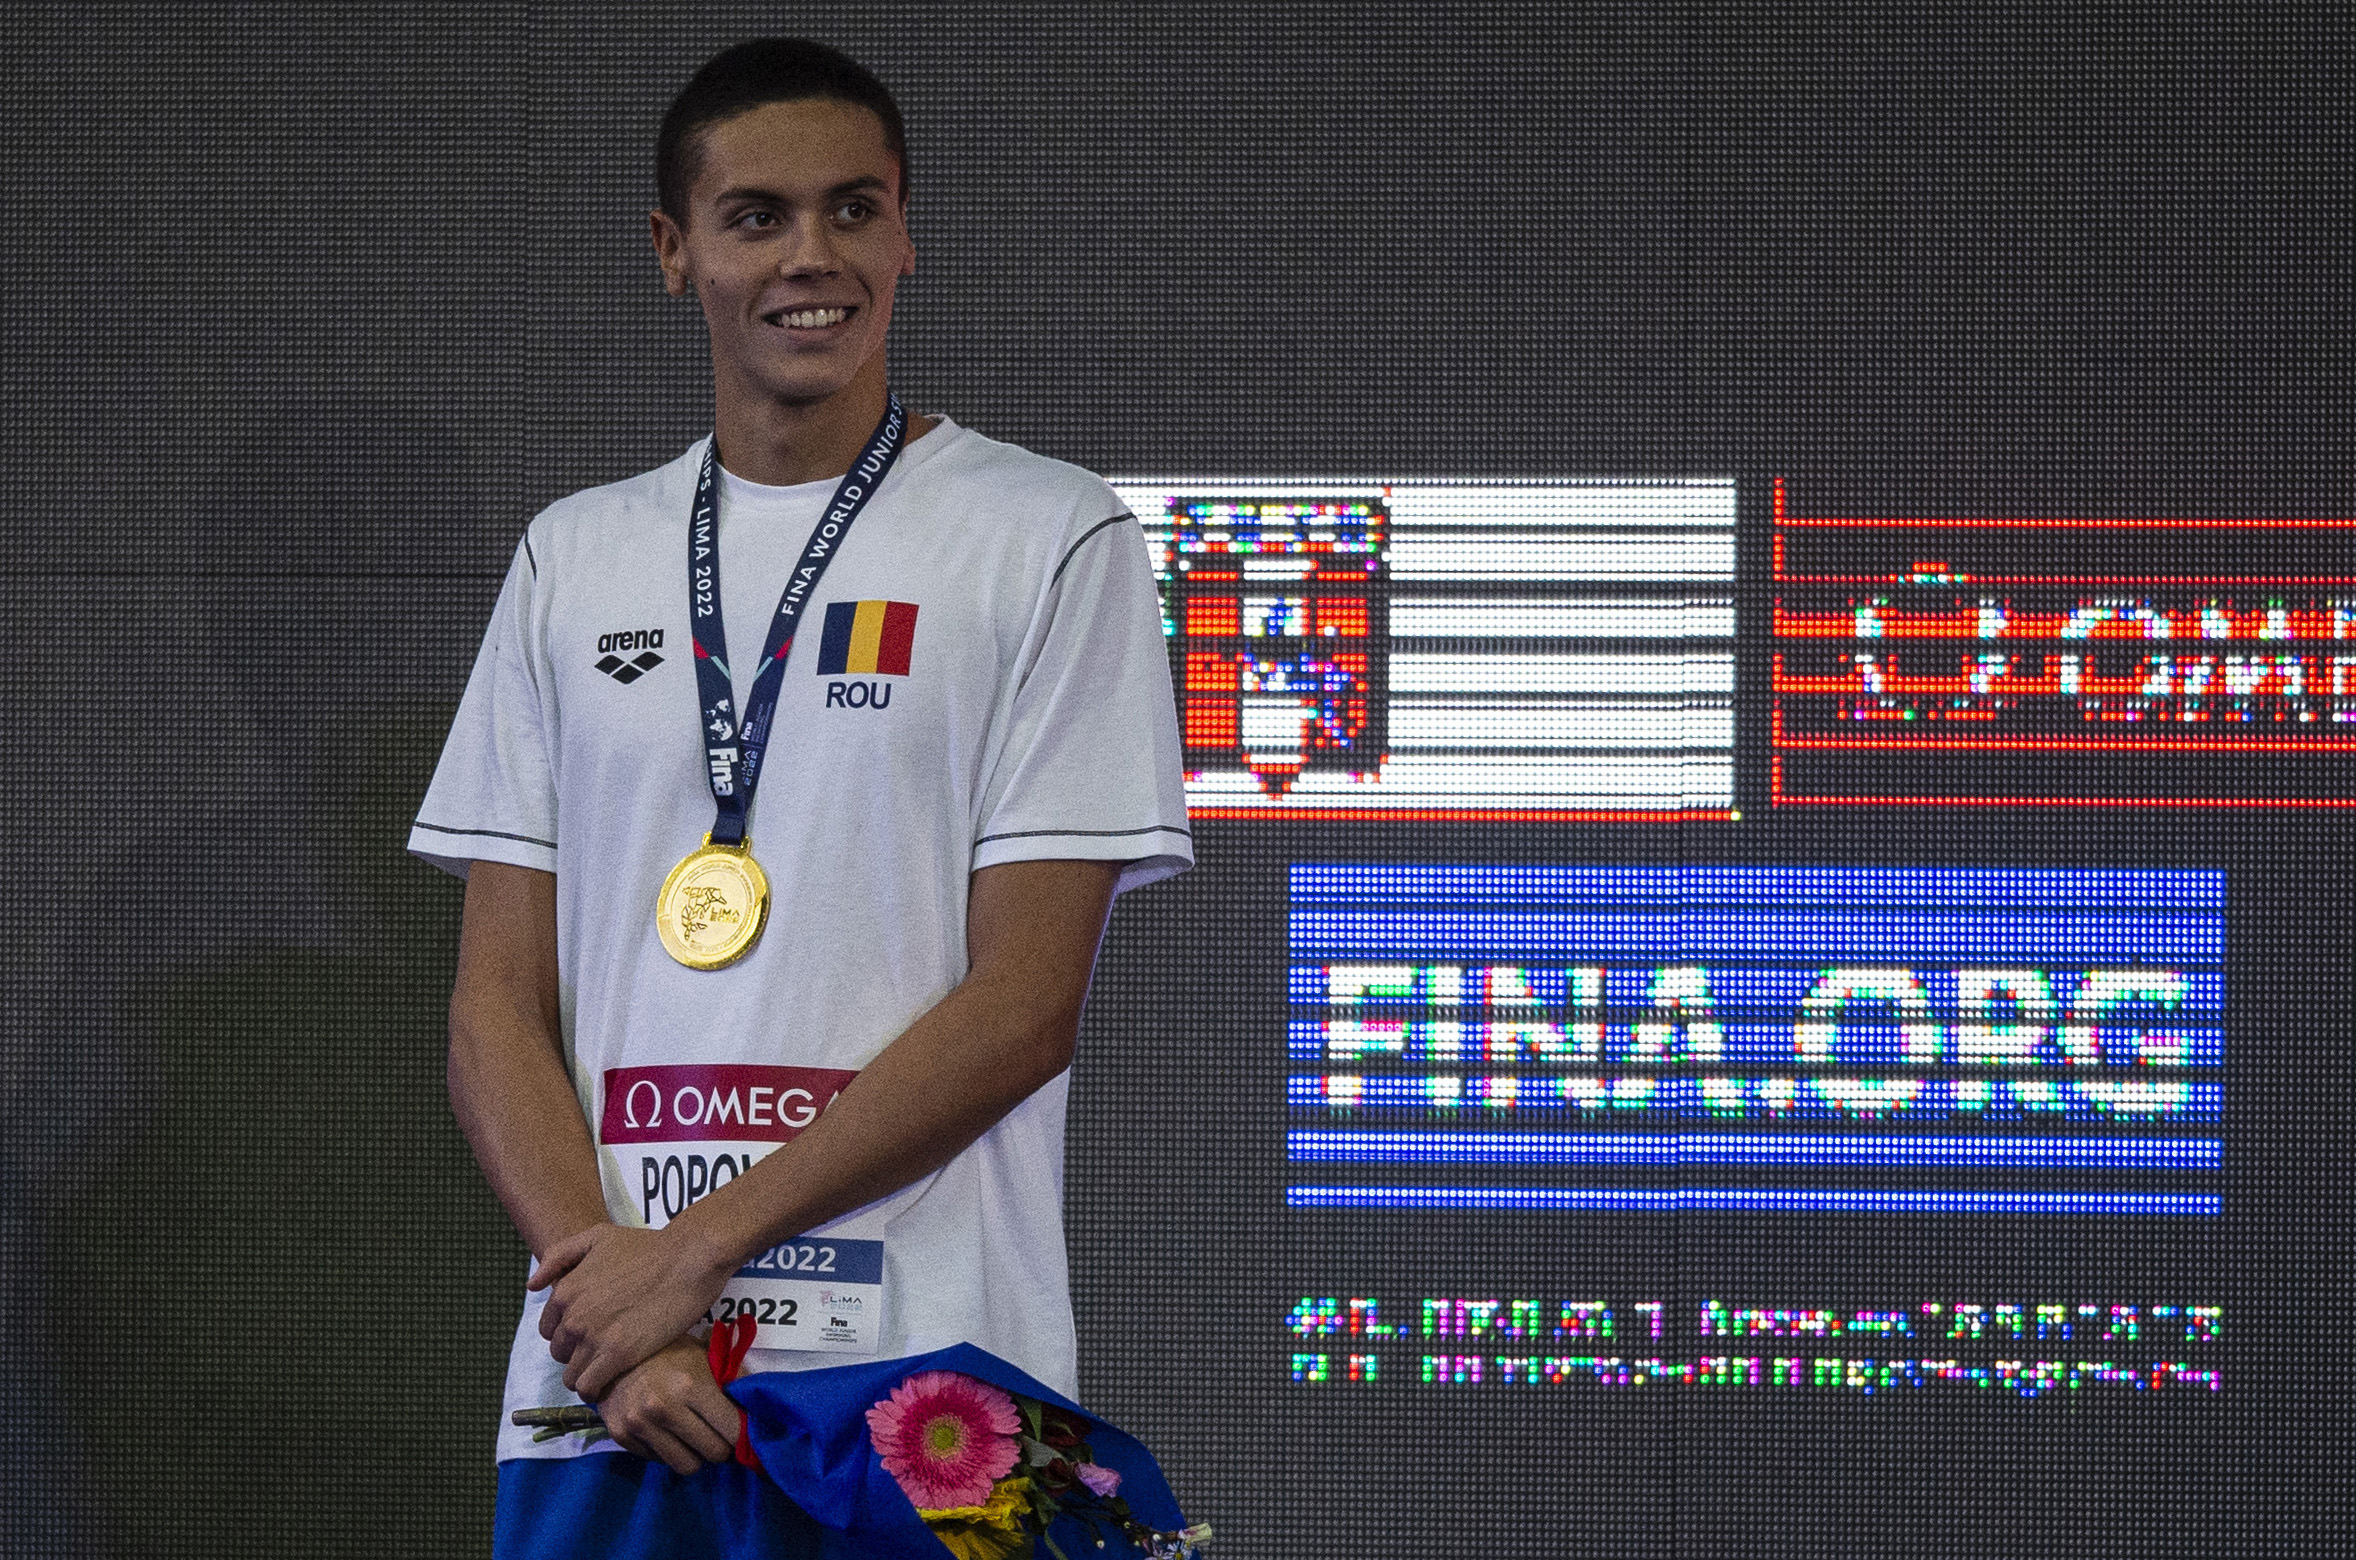 Romania's David Popovici celebrates in the podium of the Men's 100m Freestyle at the 8th FINA World Junior Swimming Championship in Lima